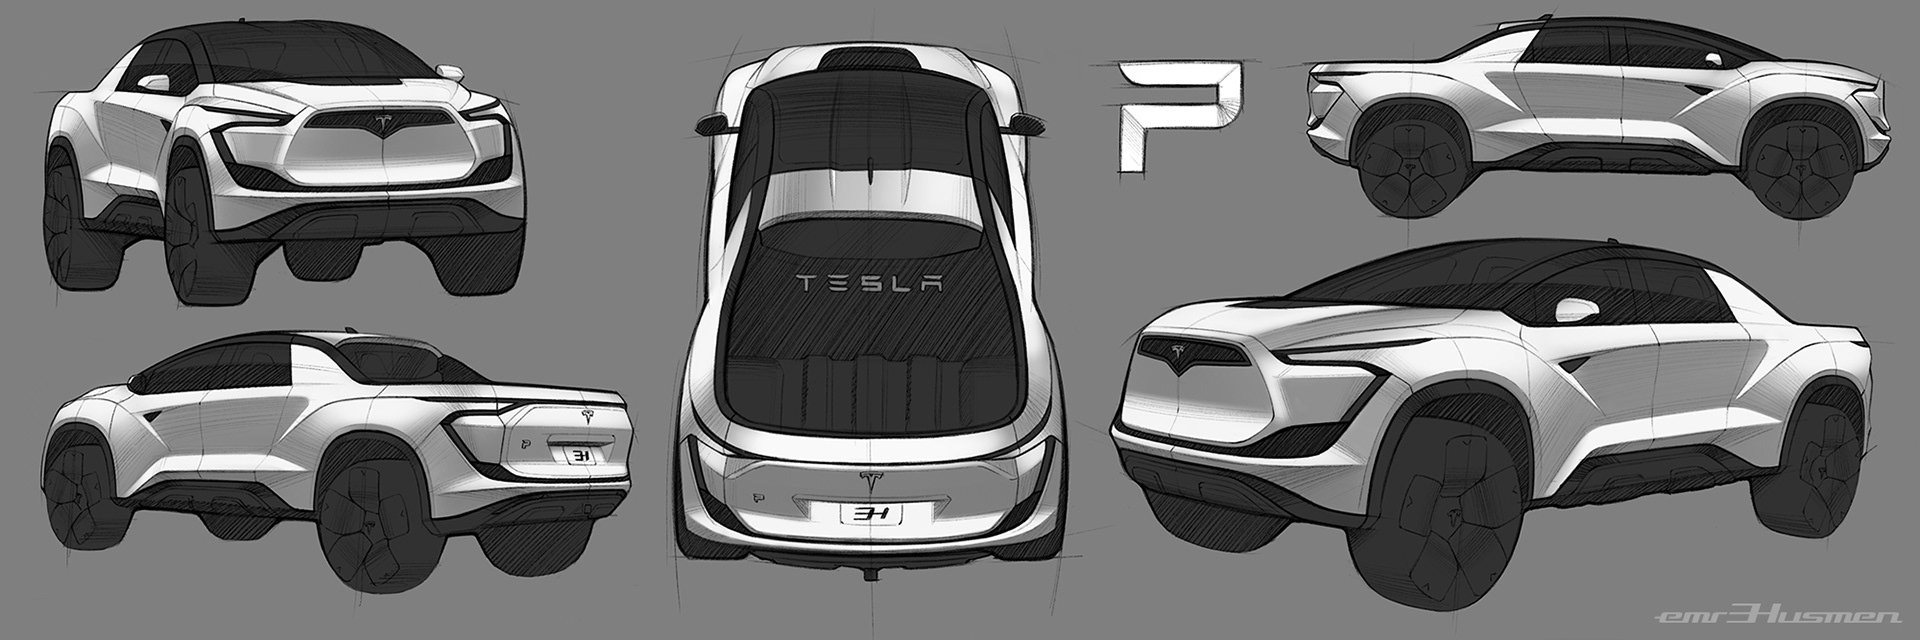 Tesla Pickup resim galerisi (22.04.2019)